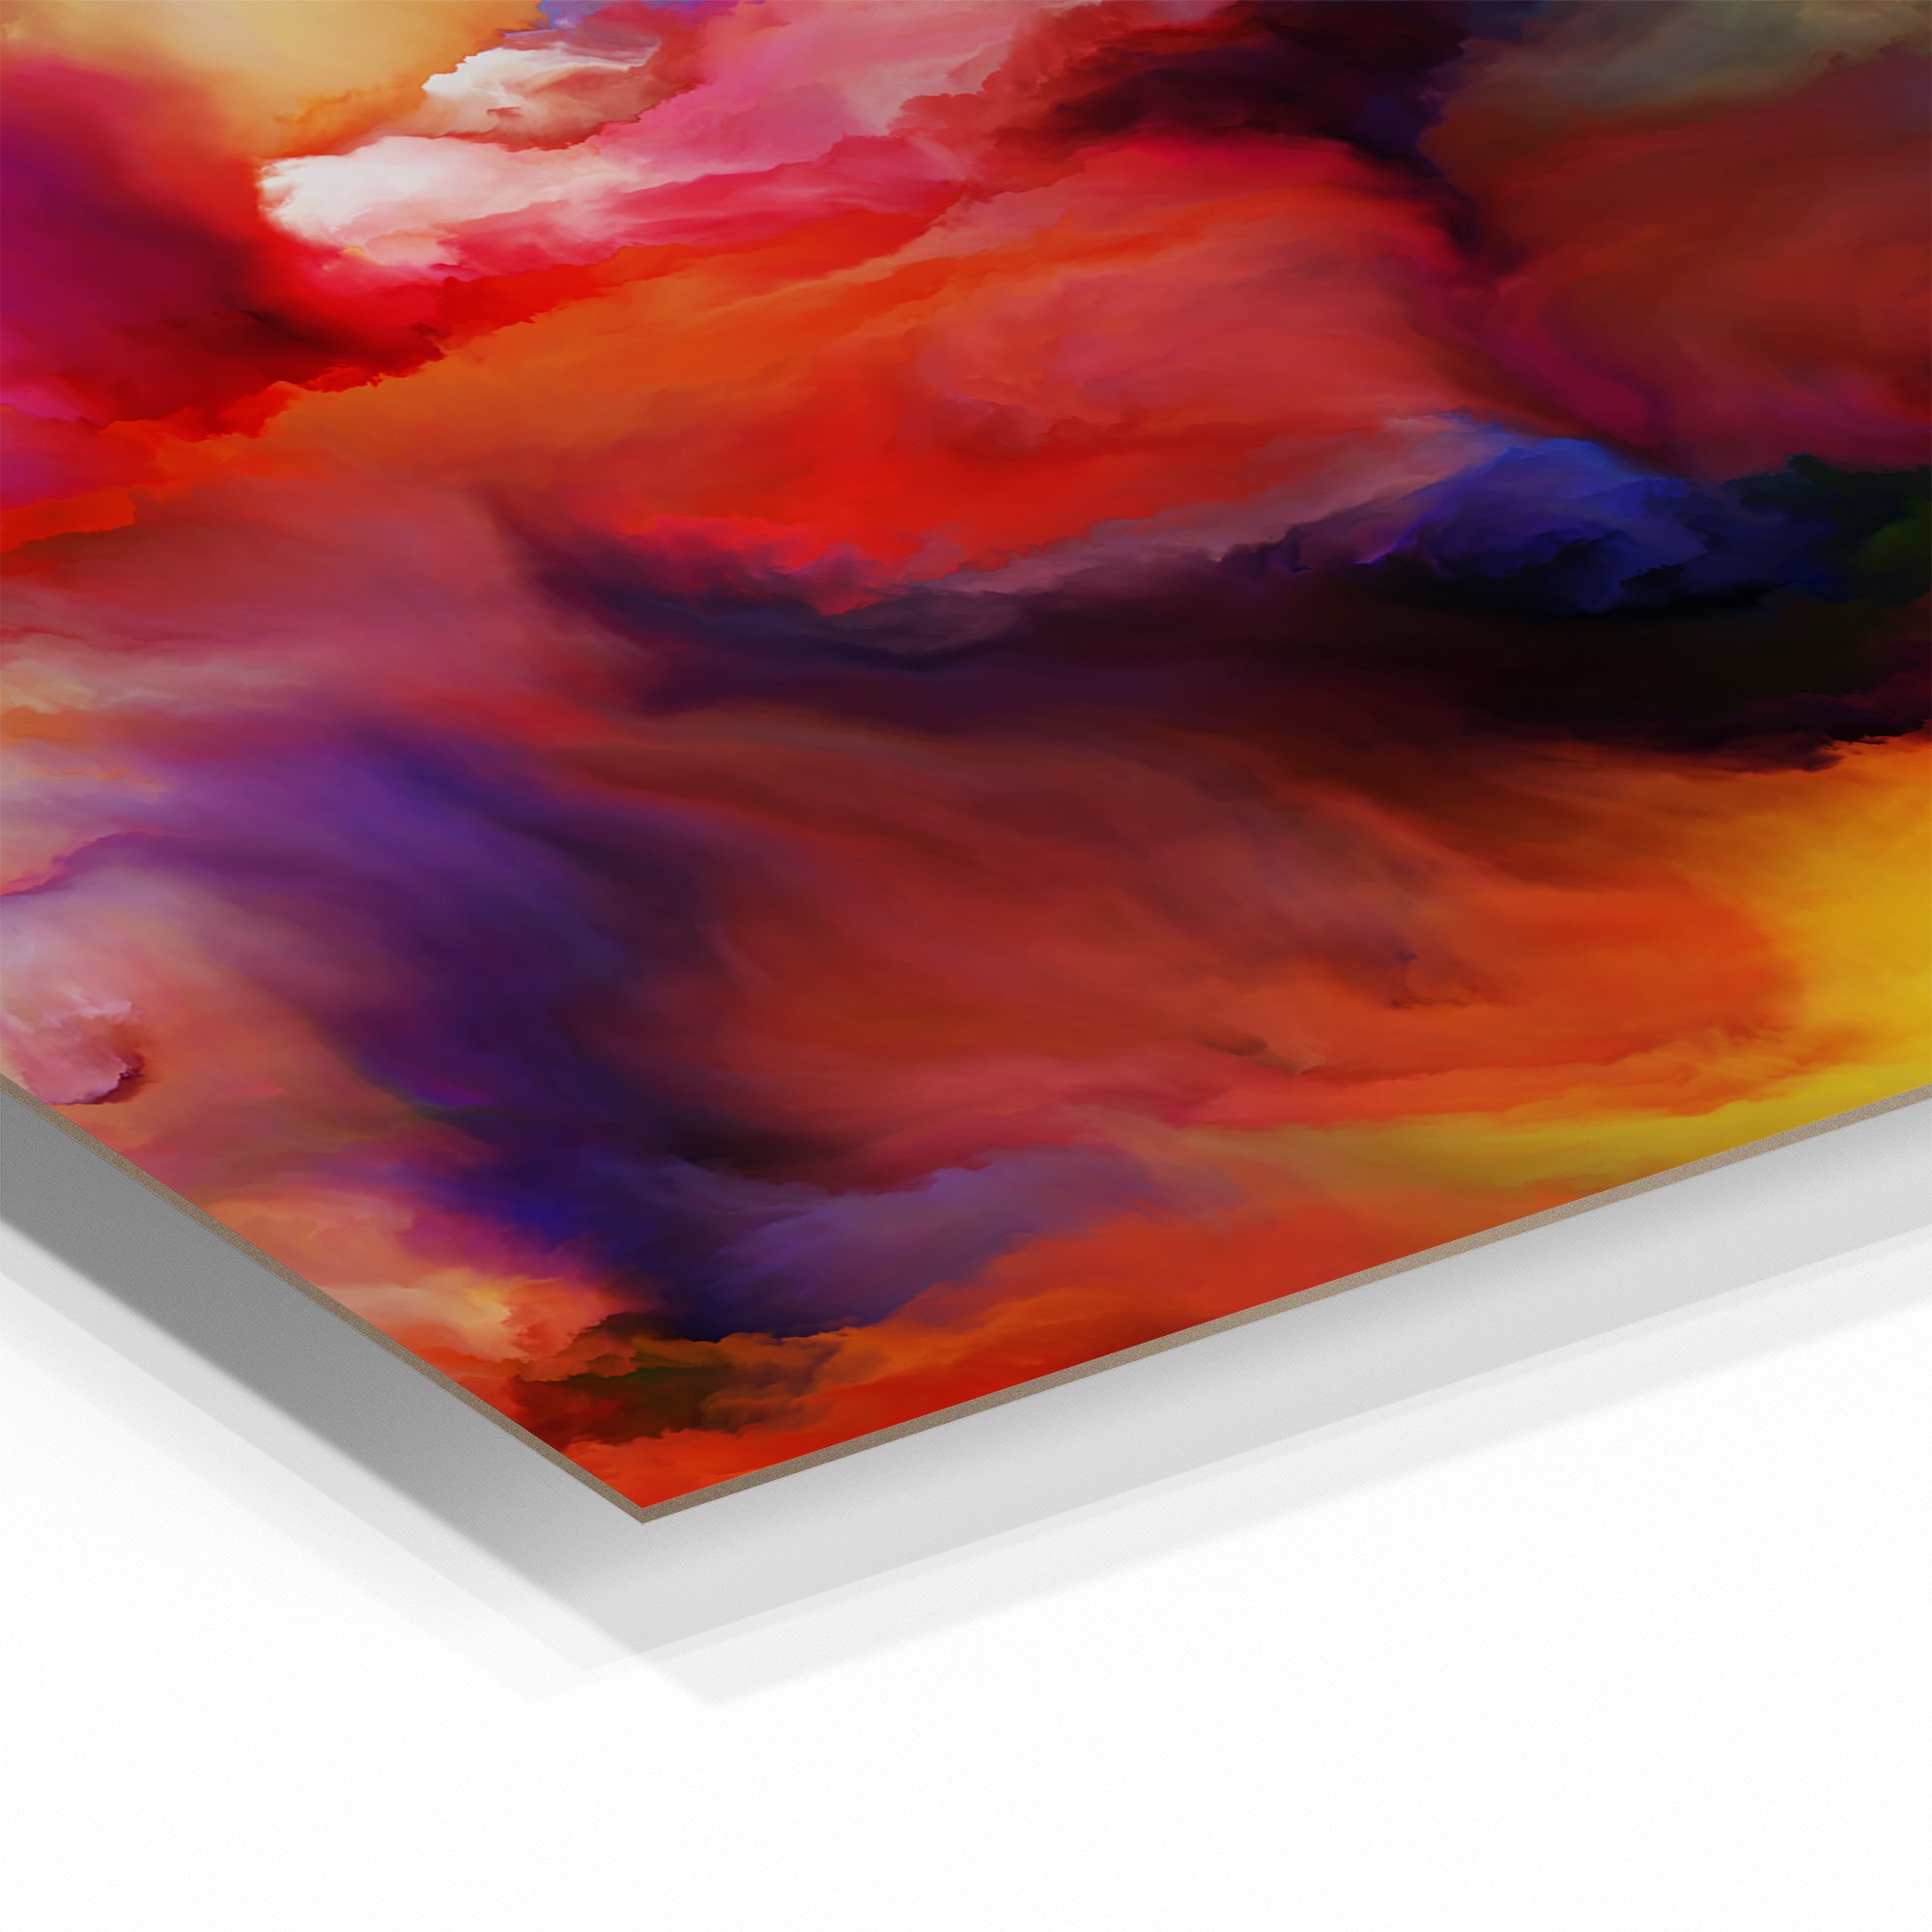 Foto obraz w ramie - Abstrakcja, kolorowe chmury (kolorowy) - Gallart.pl